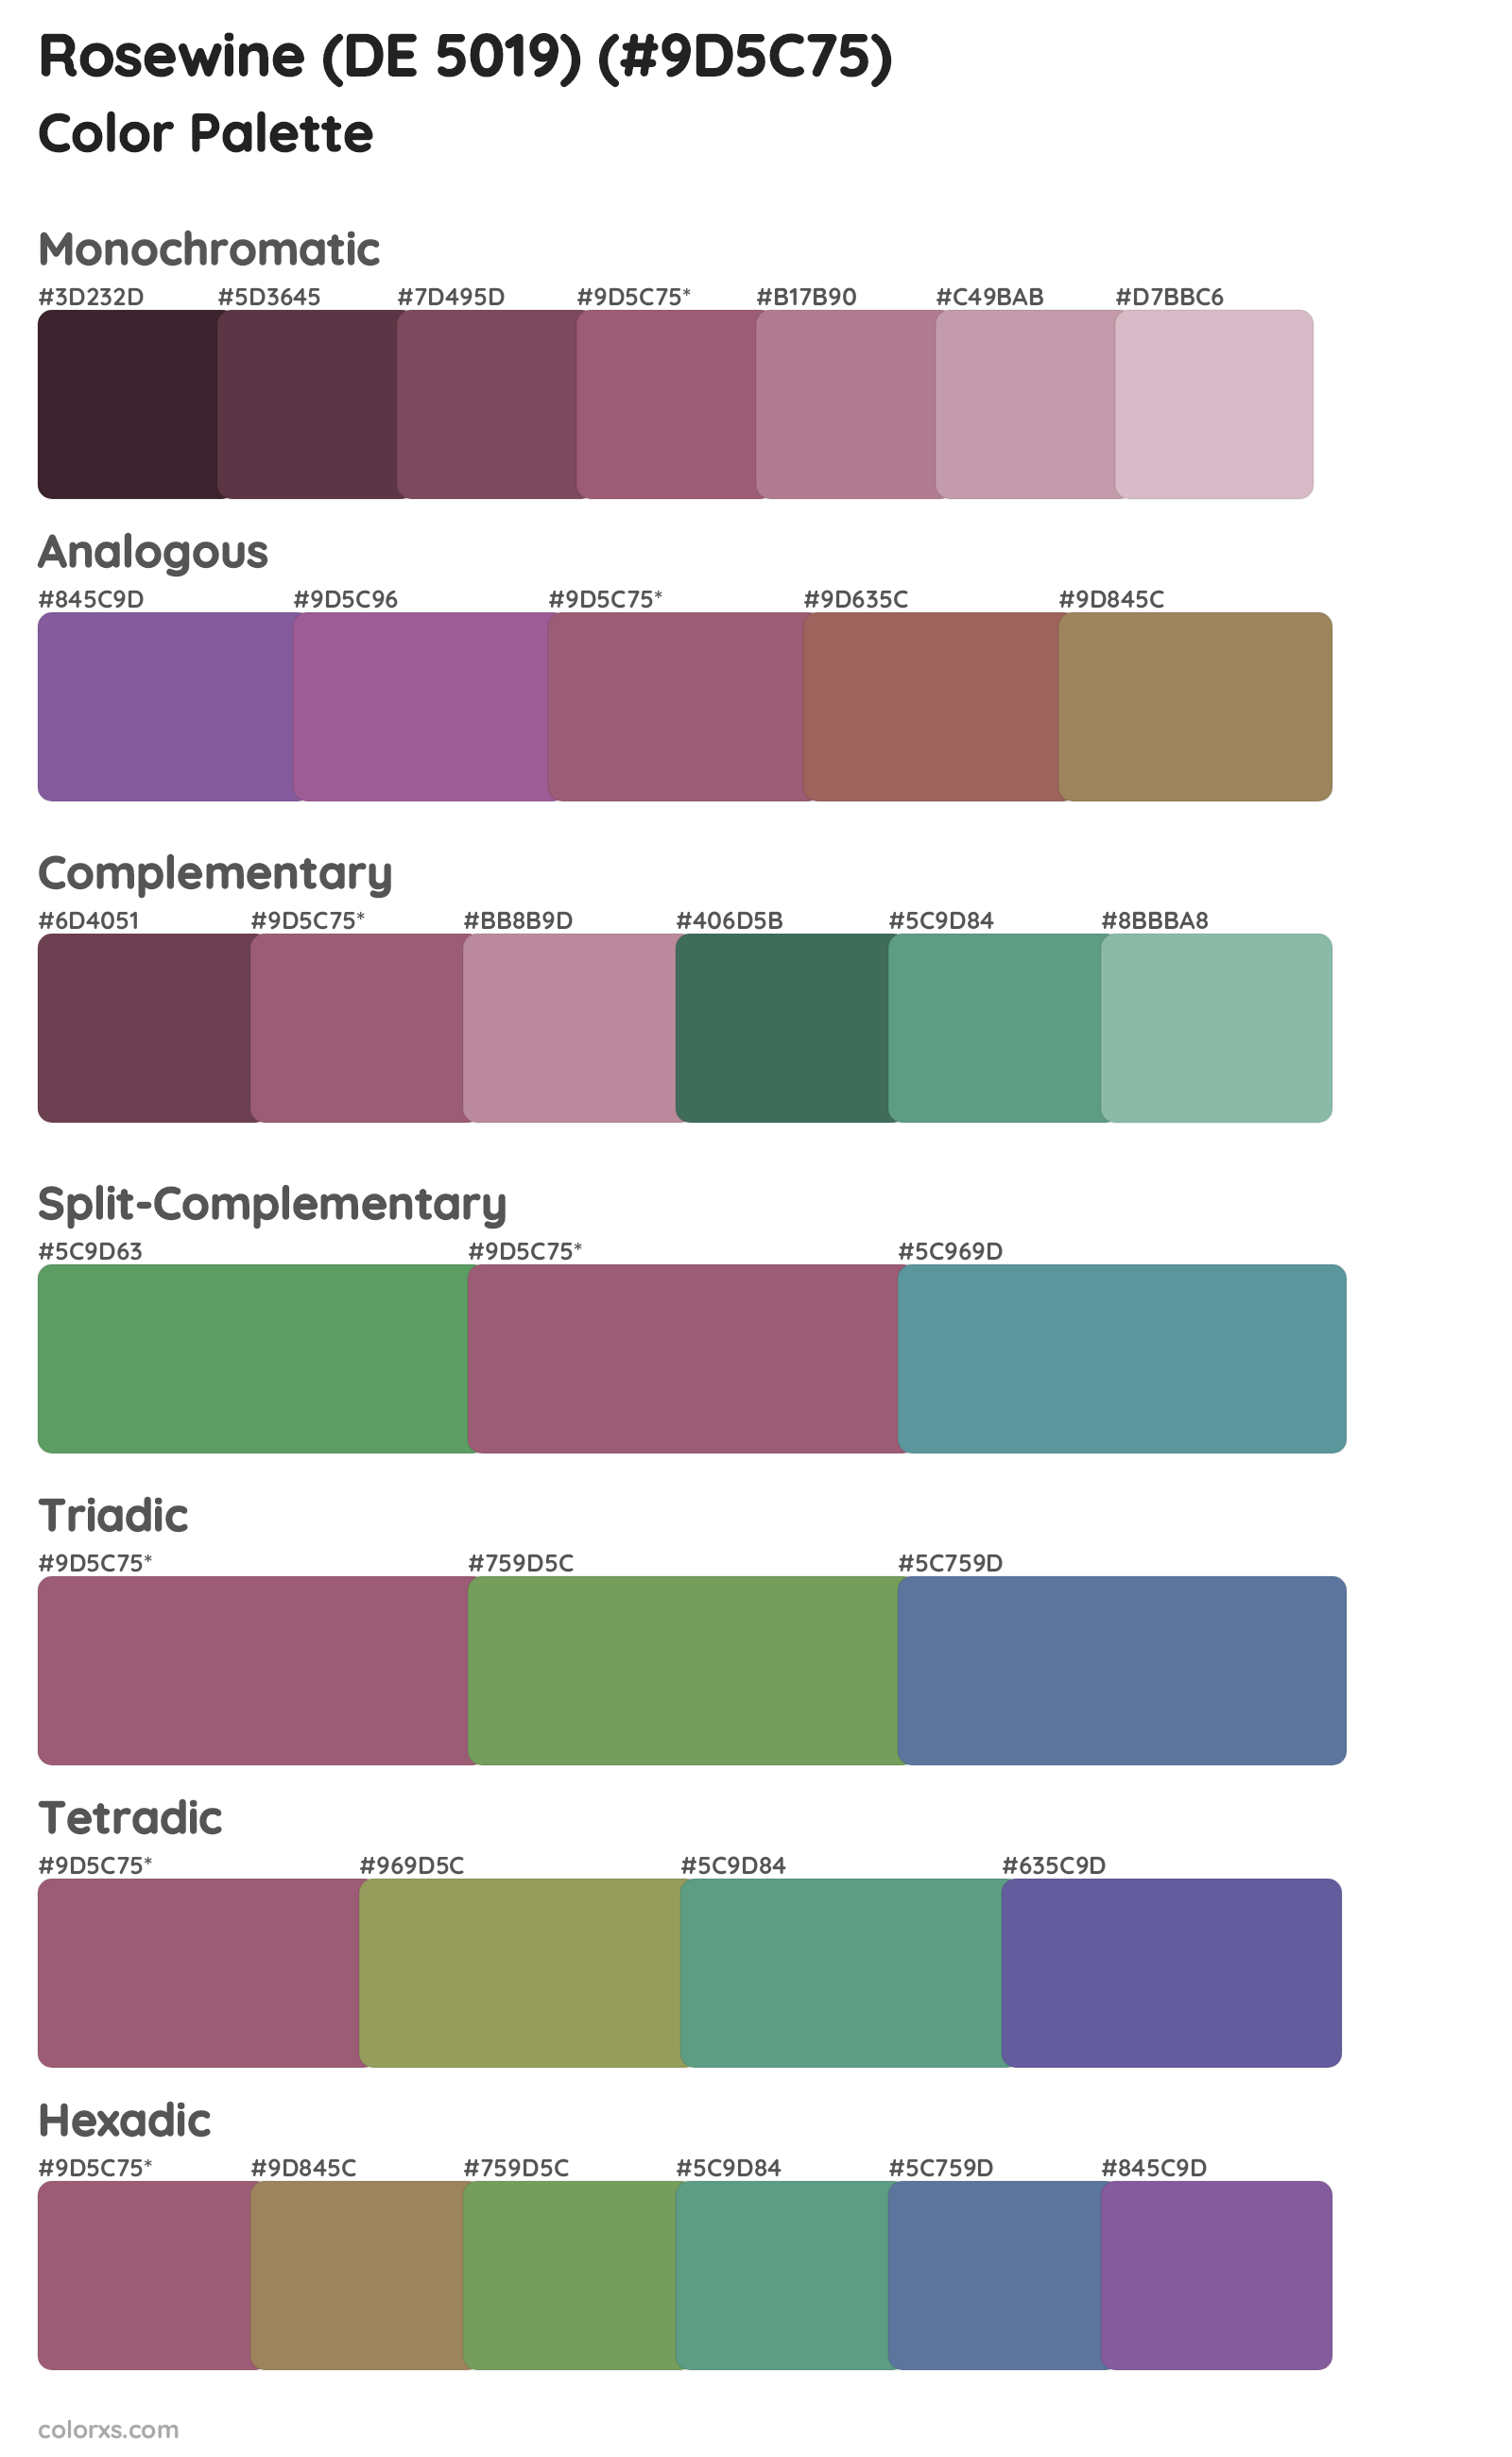 Rosewine (DE 5019) Color Scheme Palettes